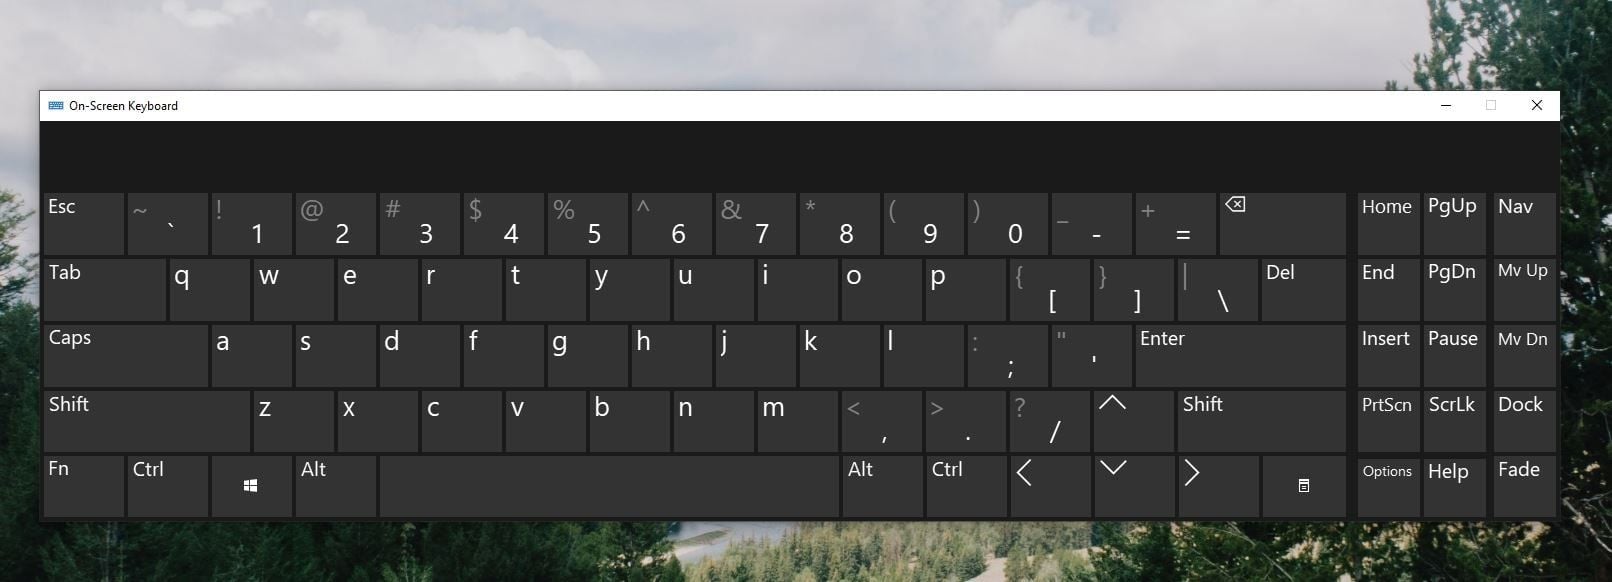 Hướng dẫn cách mở và sử dụng bàn phím ảo trên Windows 10/11